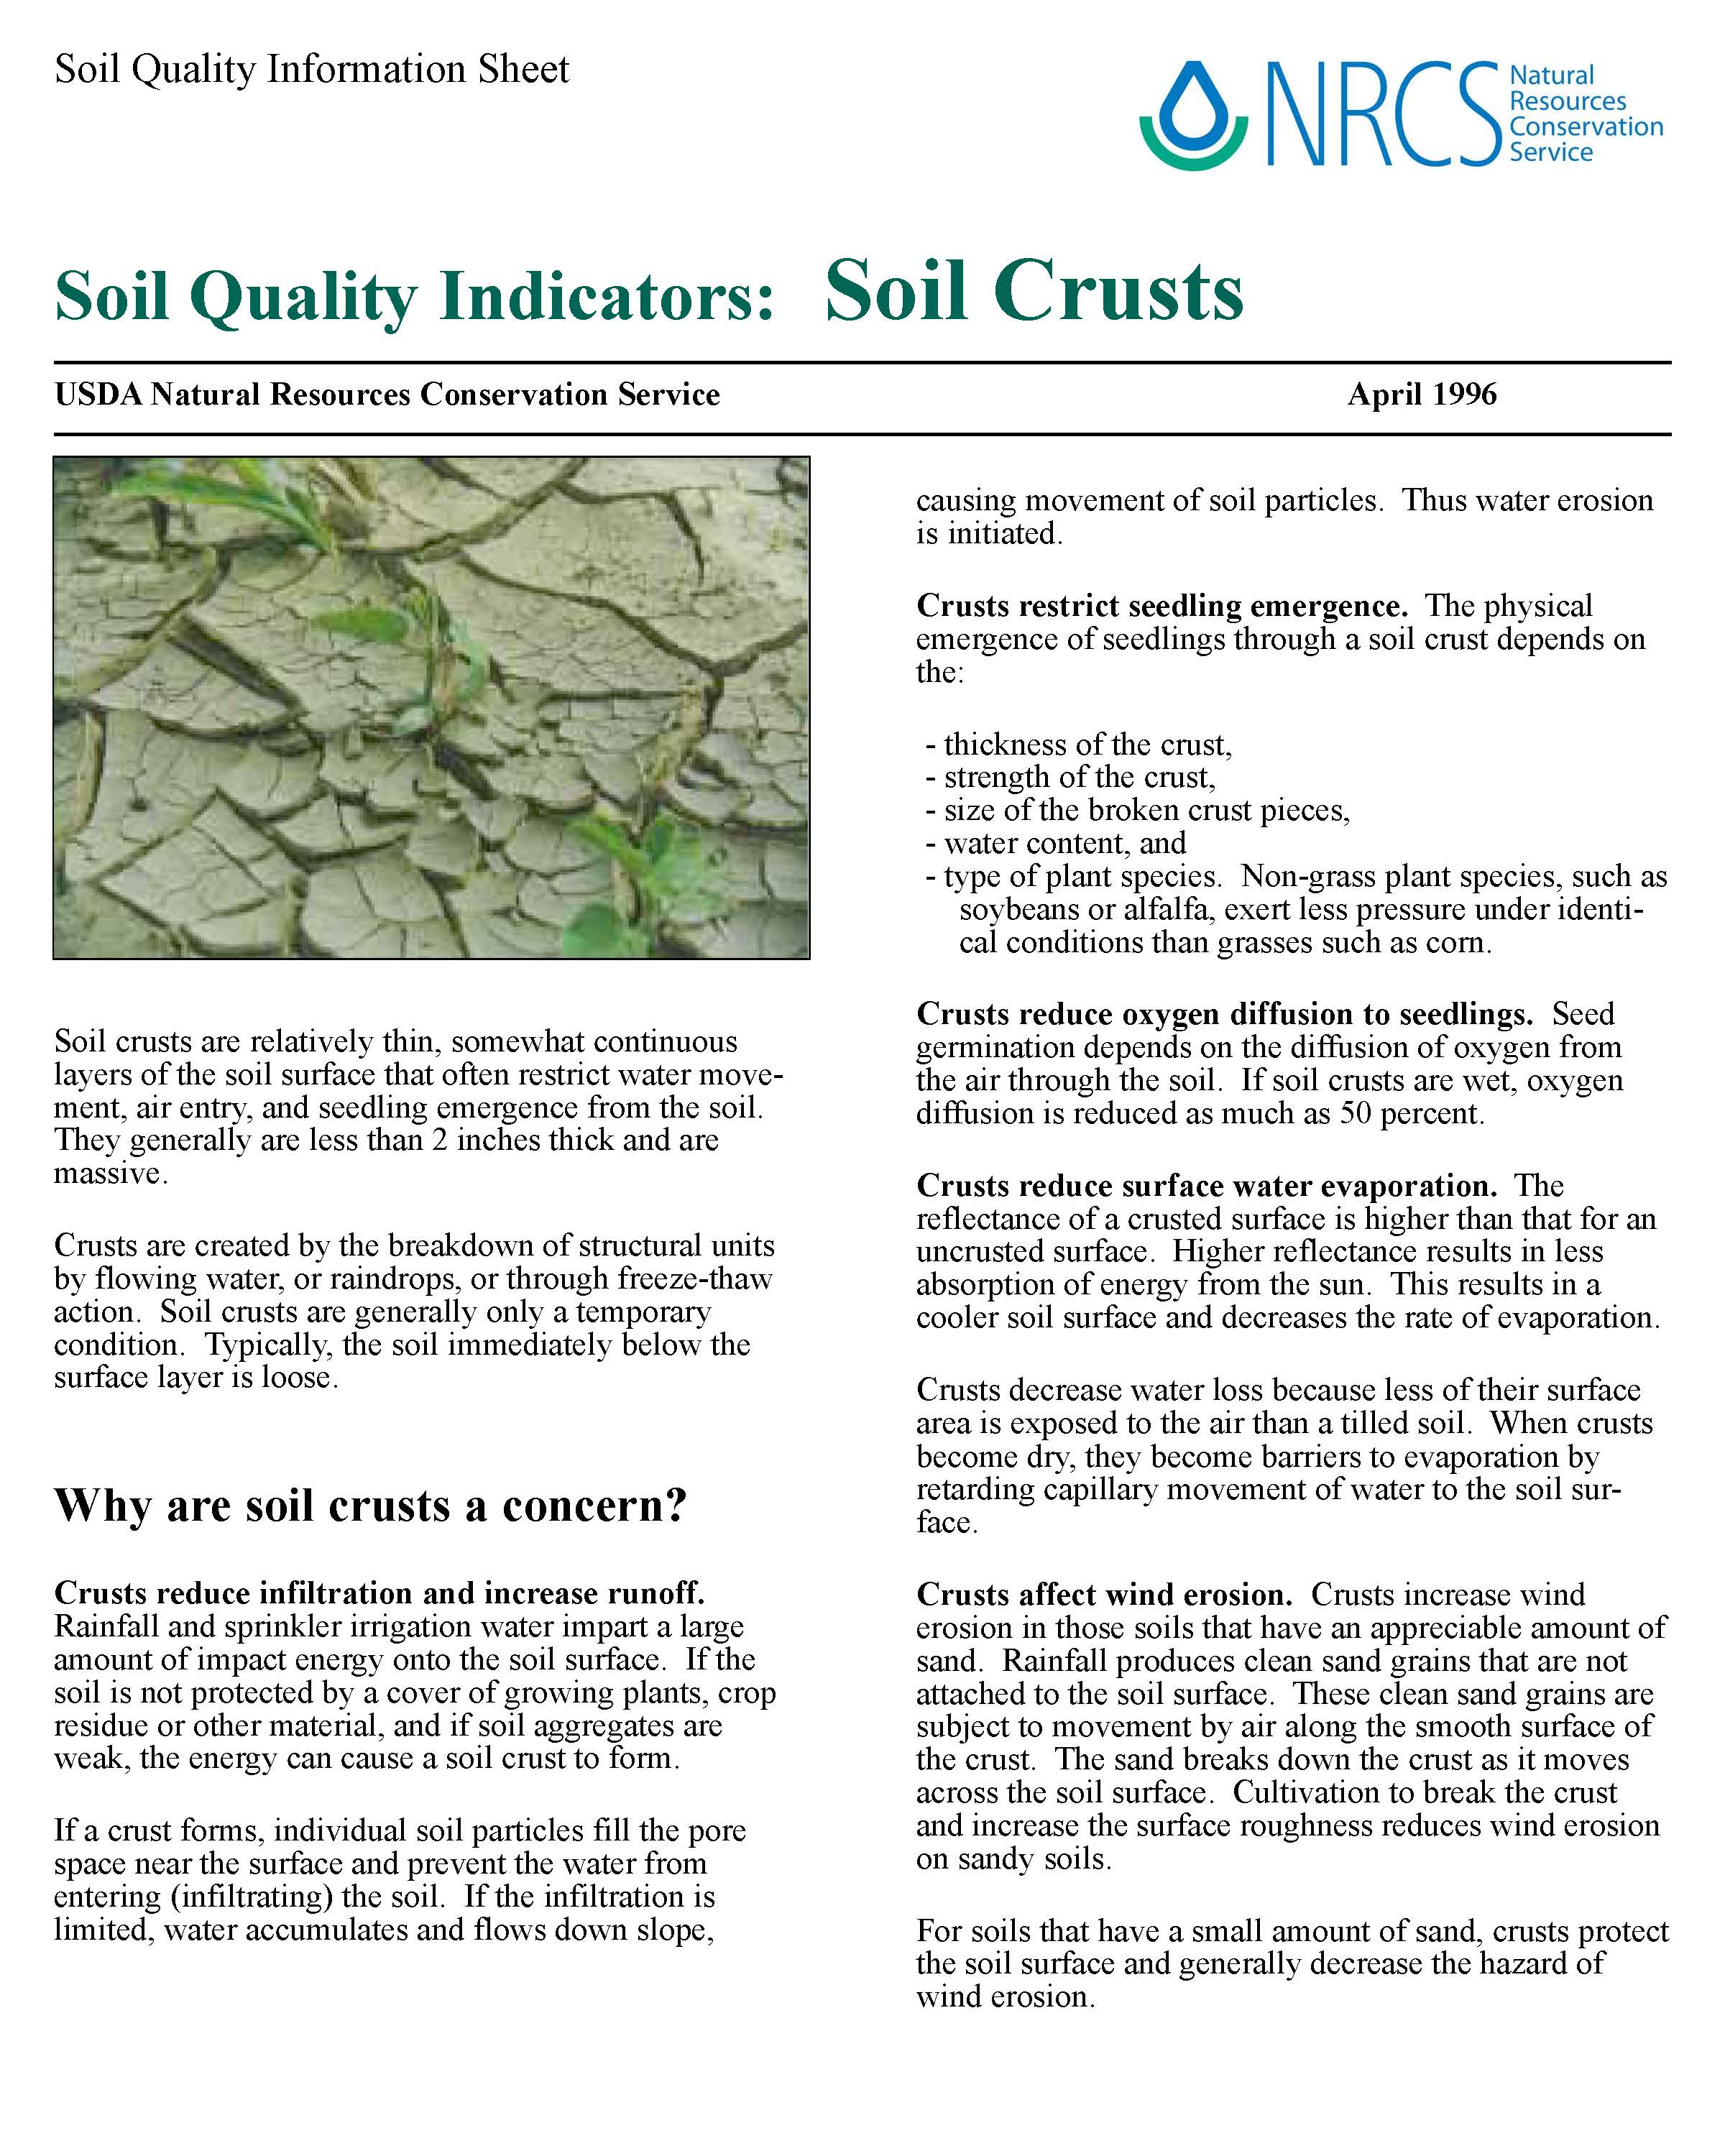  SQ-Indicators-Soil Crusts